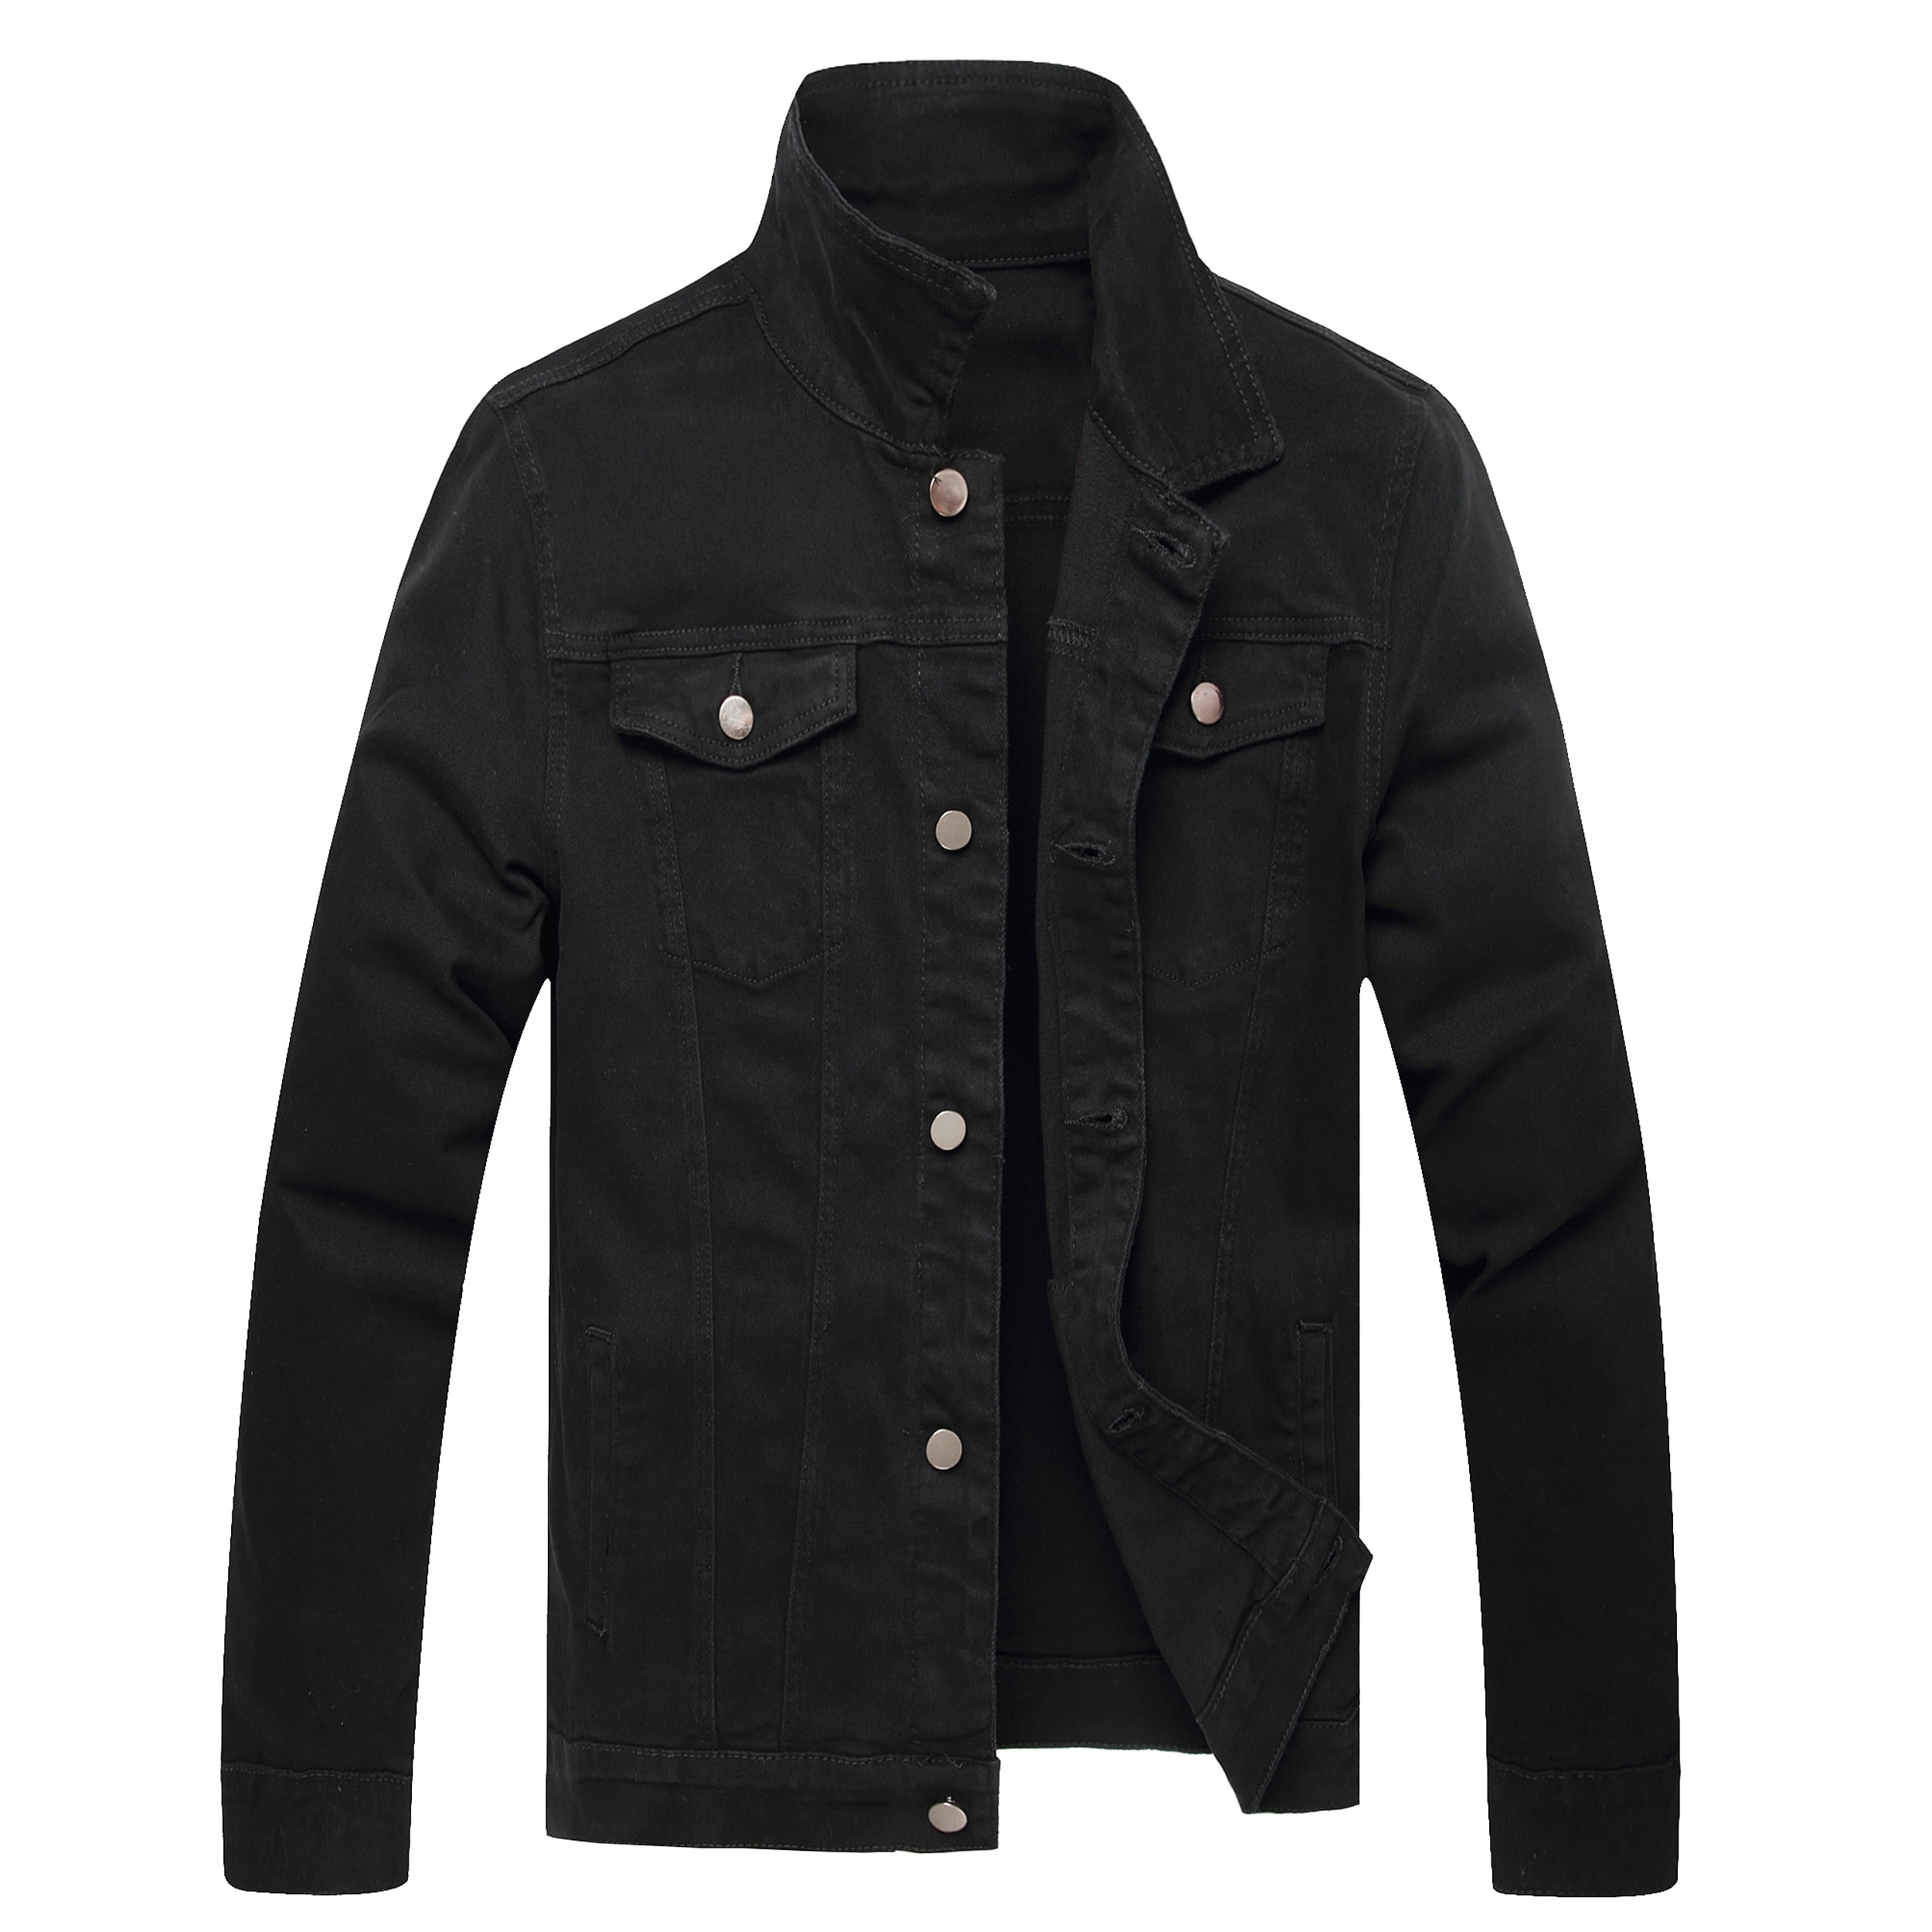 LZNEV Jean Jacket for Men, Fashion Mens Denim Jacket Washed Classic ...